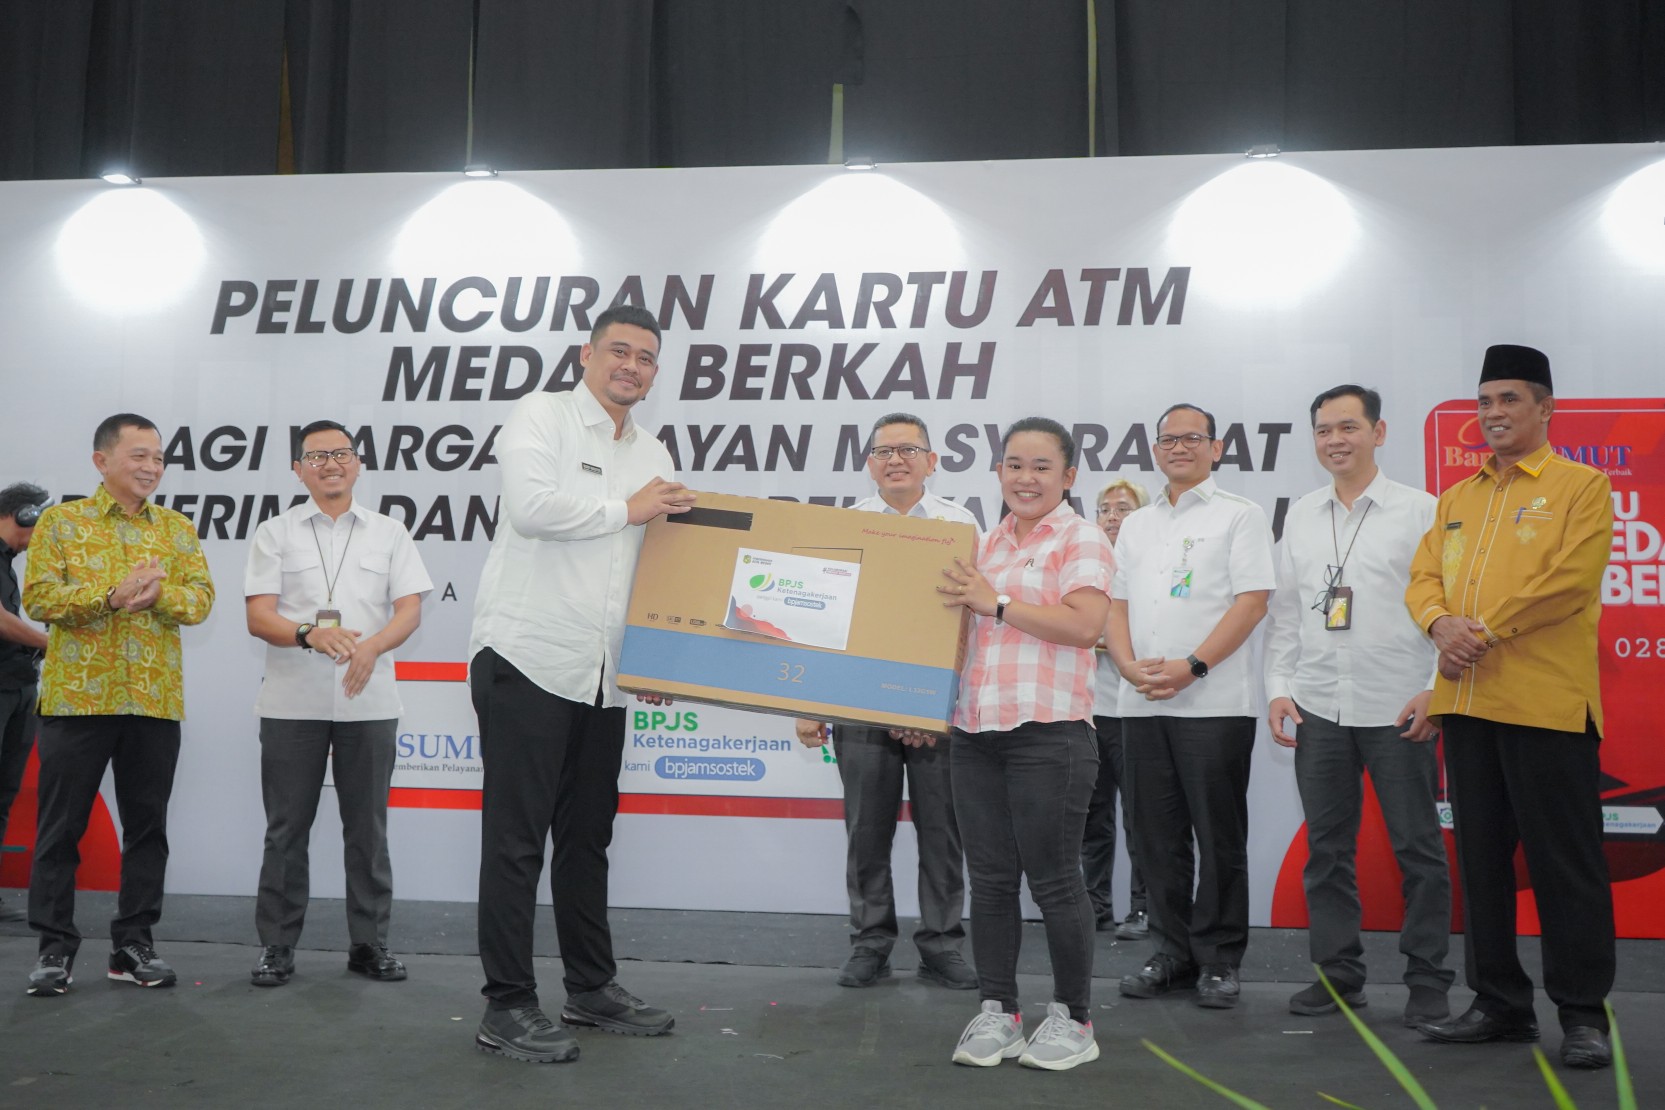 Wali Kota Medan Bobby Nasution Saat Peluncuran Kartu ATM Berlogo Khusus "Medan Berkah" di Medan International Convention Center (MICC), Rabu (10/5)